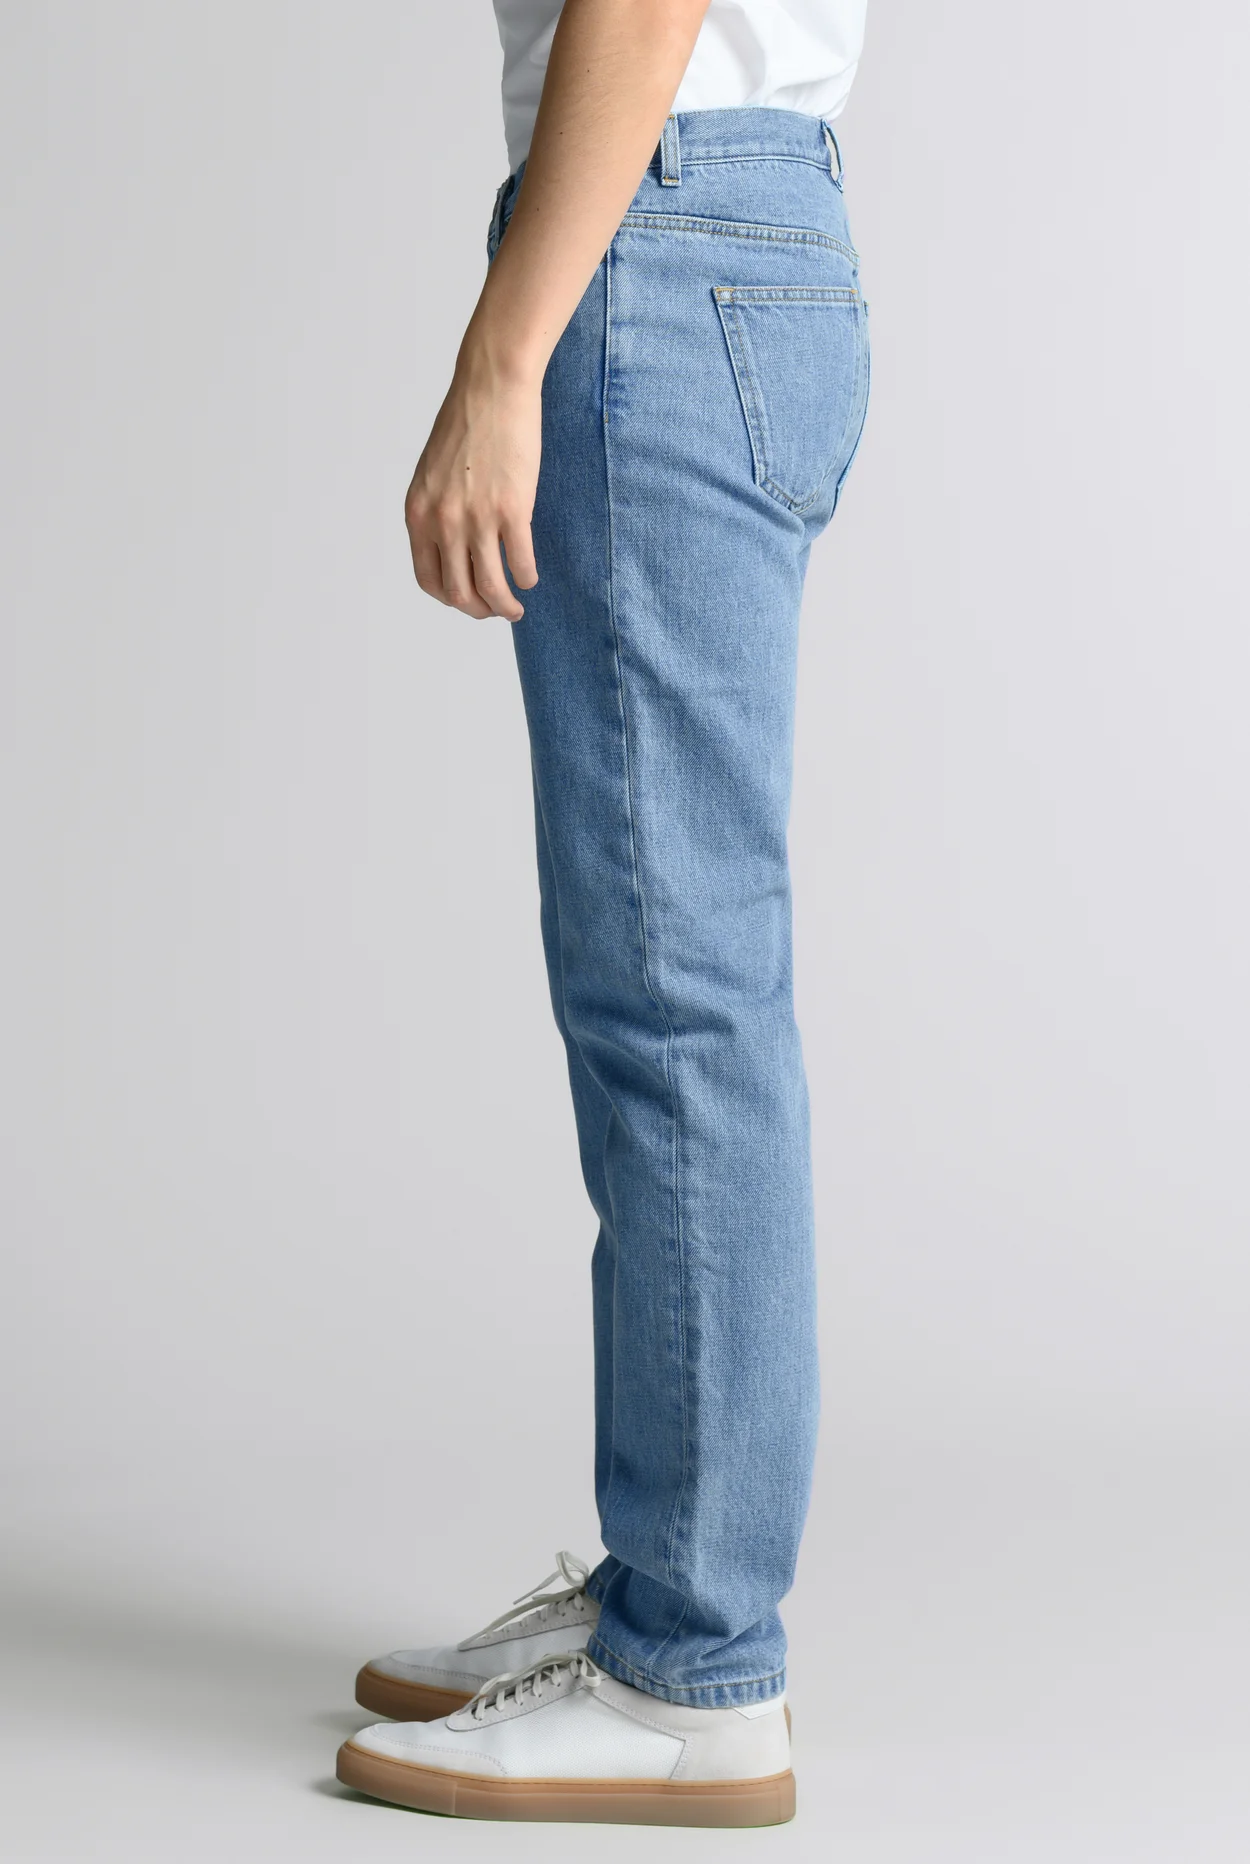 Skinny Jeans Blue Pants Stretchable Denim Maong For Men | Lazada PH-nextbuild.com.vn